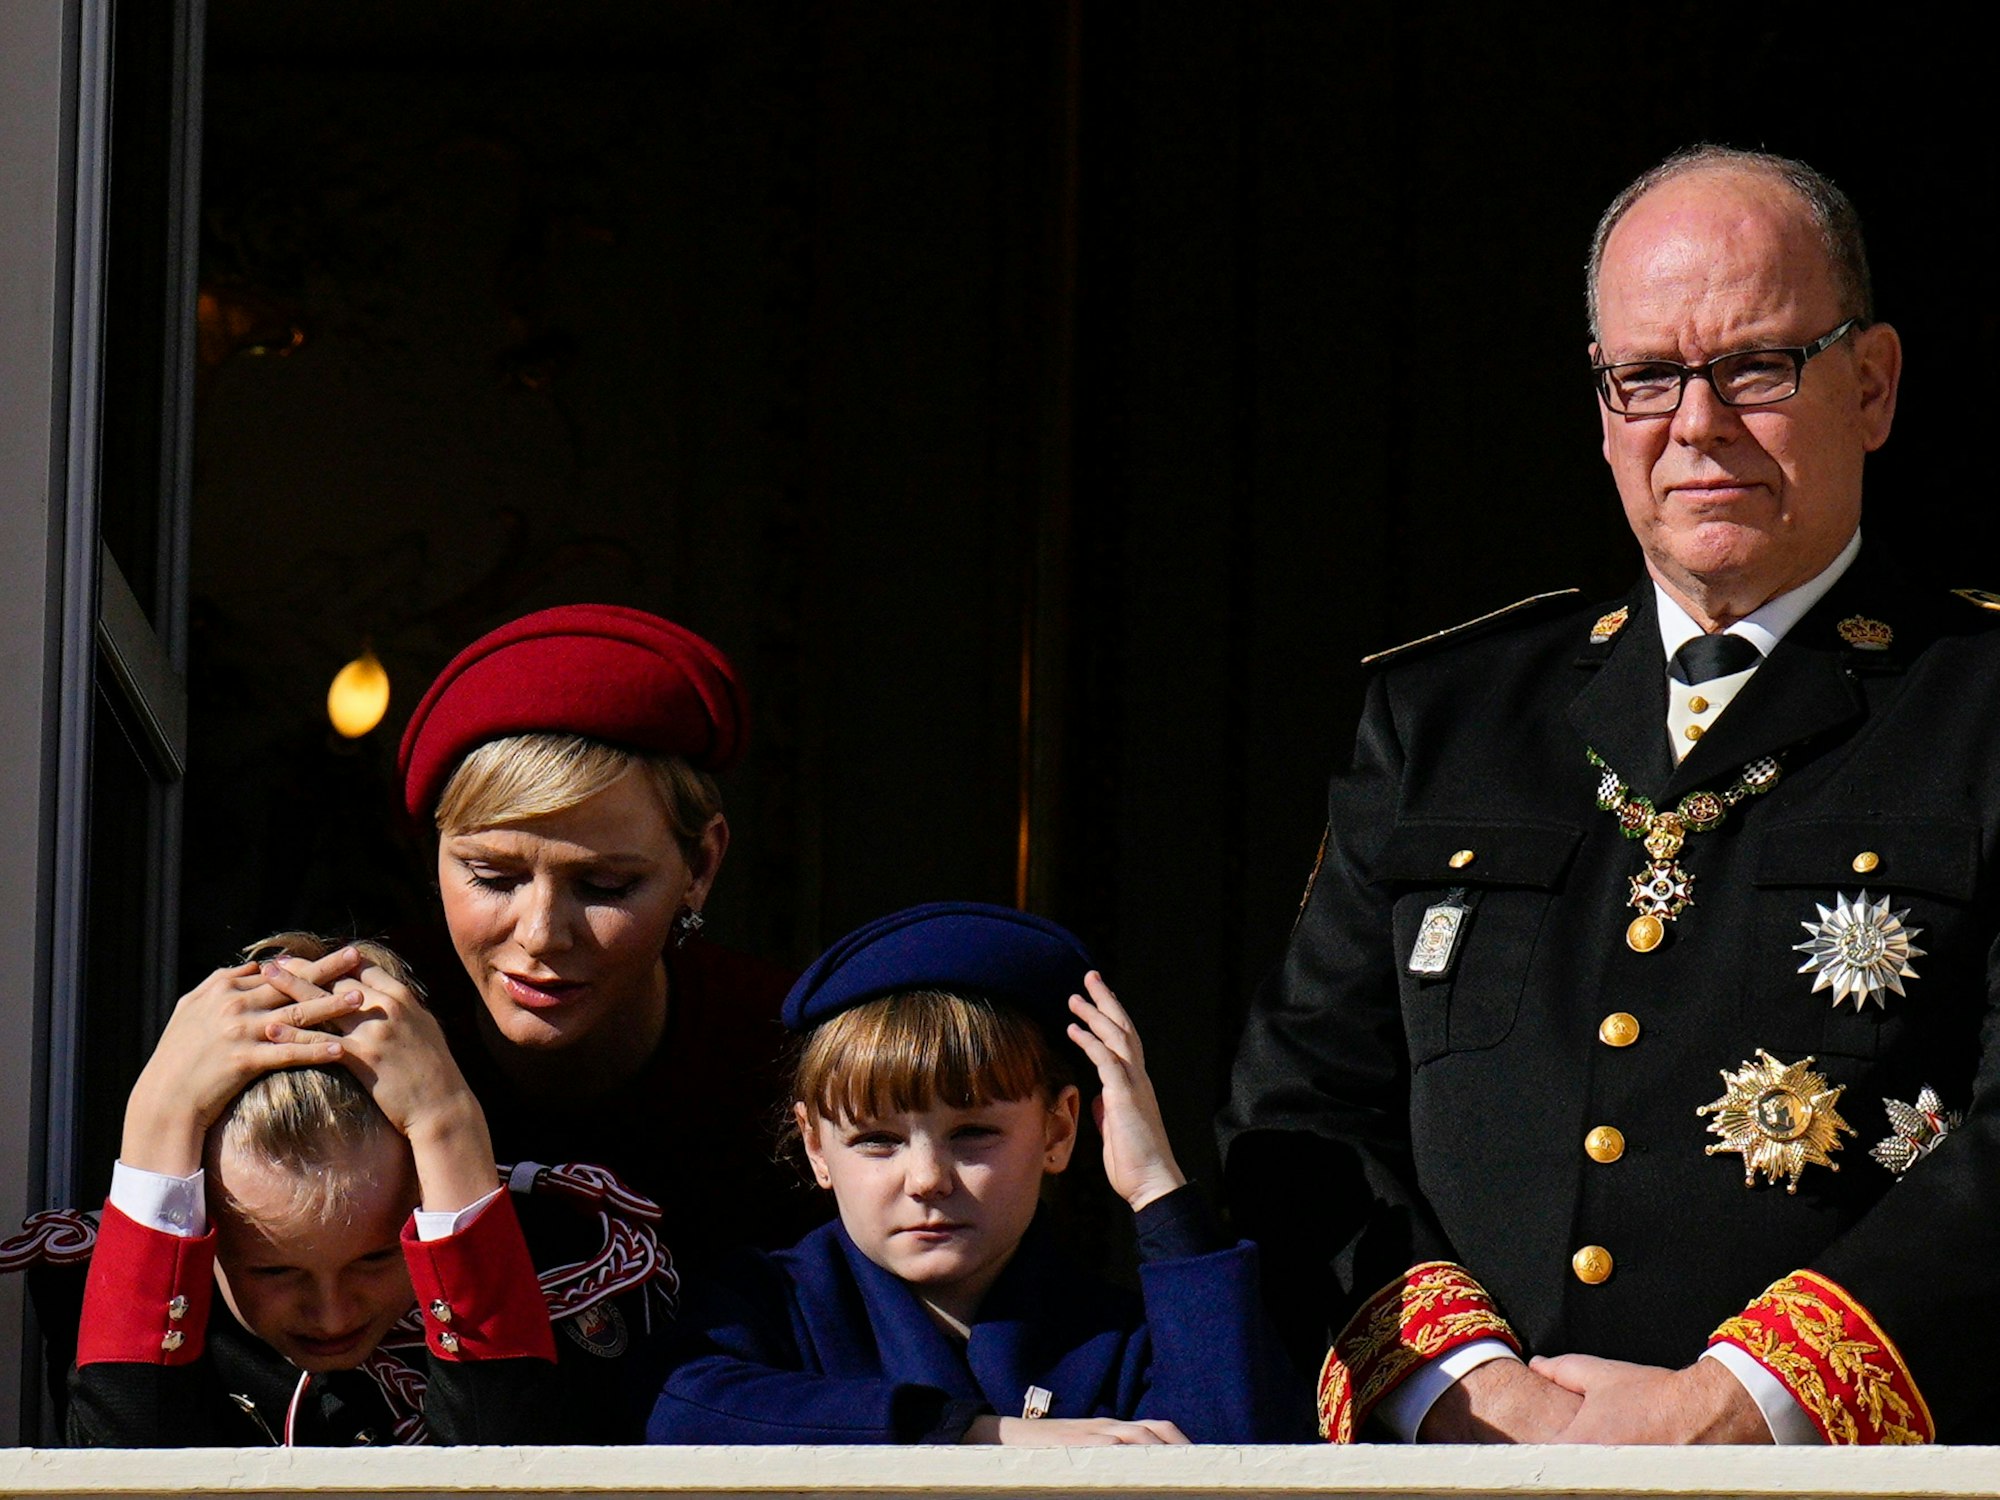 Fürstin Charlène von Monaco (hinten links), Fürst Albert II. von Monaco (hinten rechts), Fürst Jacques von Monaco (vorne links) und Fürstin Gabriella (vorne rechts) winken vom Balkon des Fürstenpalastes von Monaco während der Feier zum Nationalfeiertag.